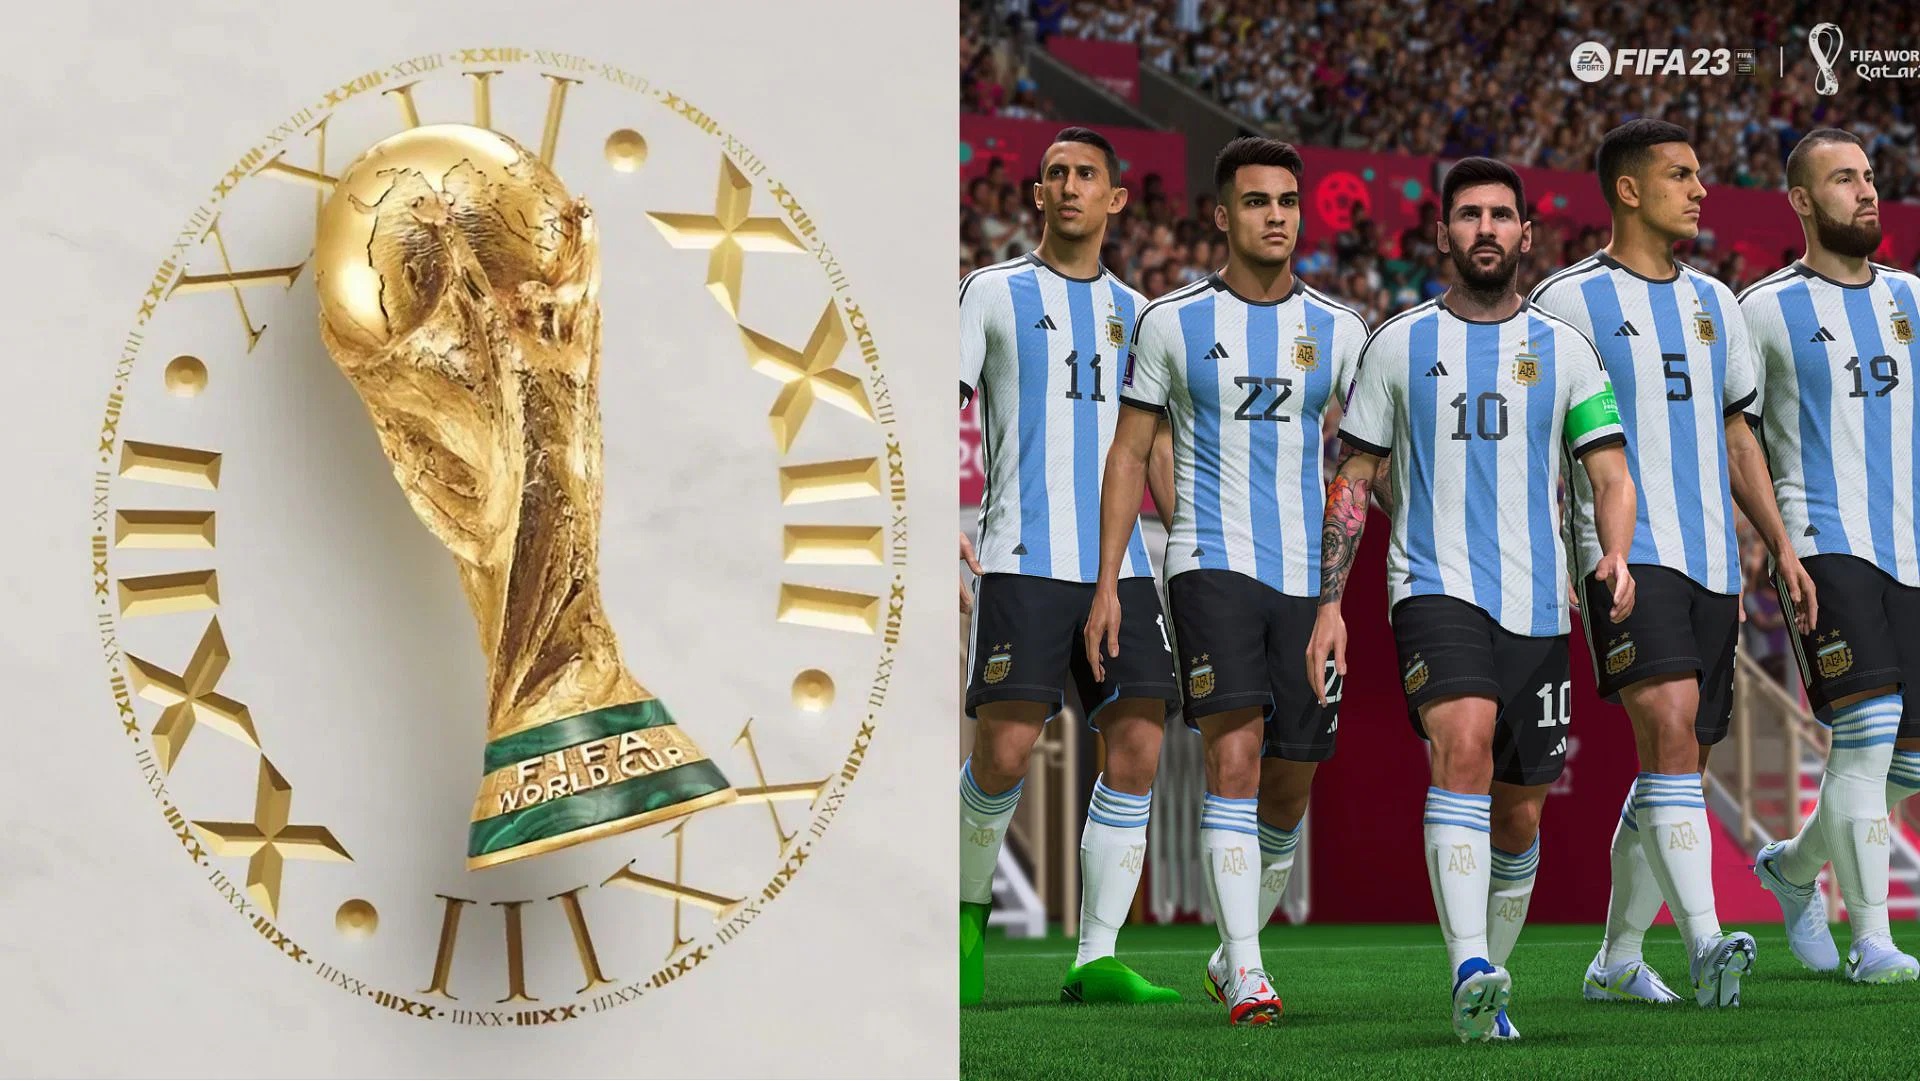 پیش بینی صحیح قهرمان جام جهانی توسط EA Sports برای چهارمین بار متوالی 